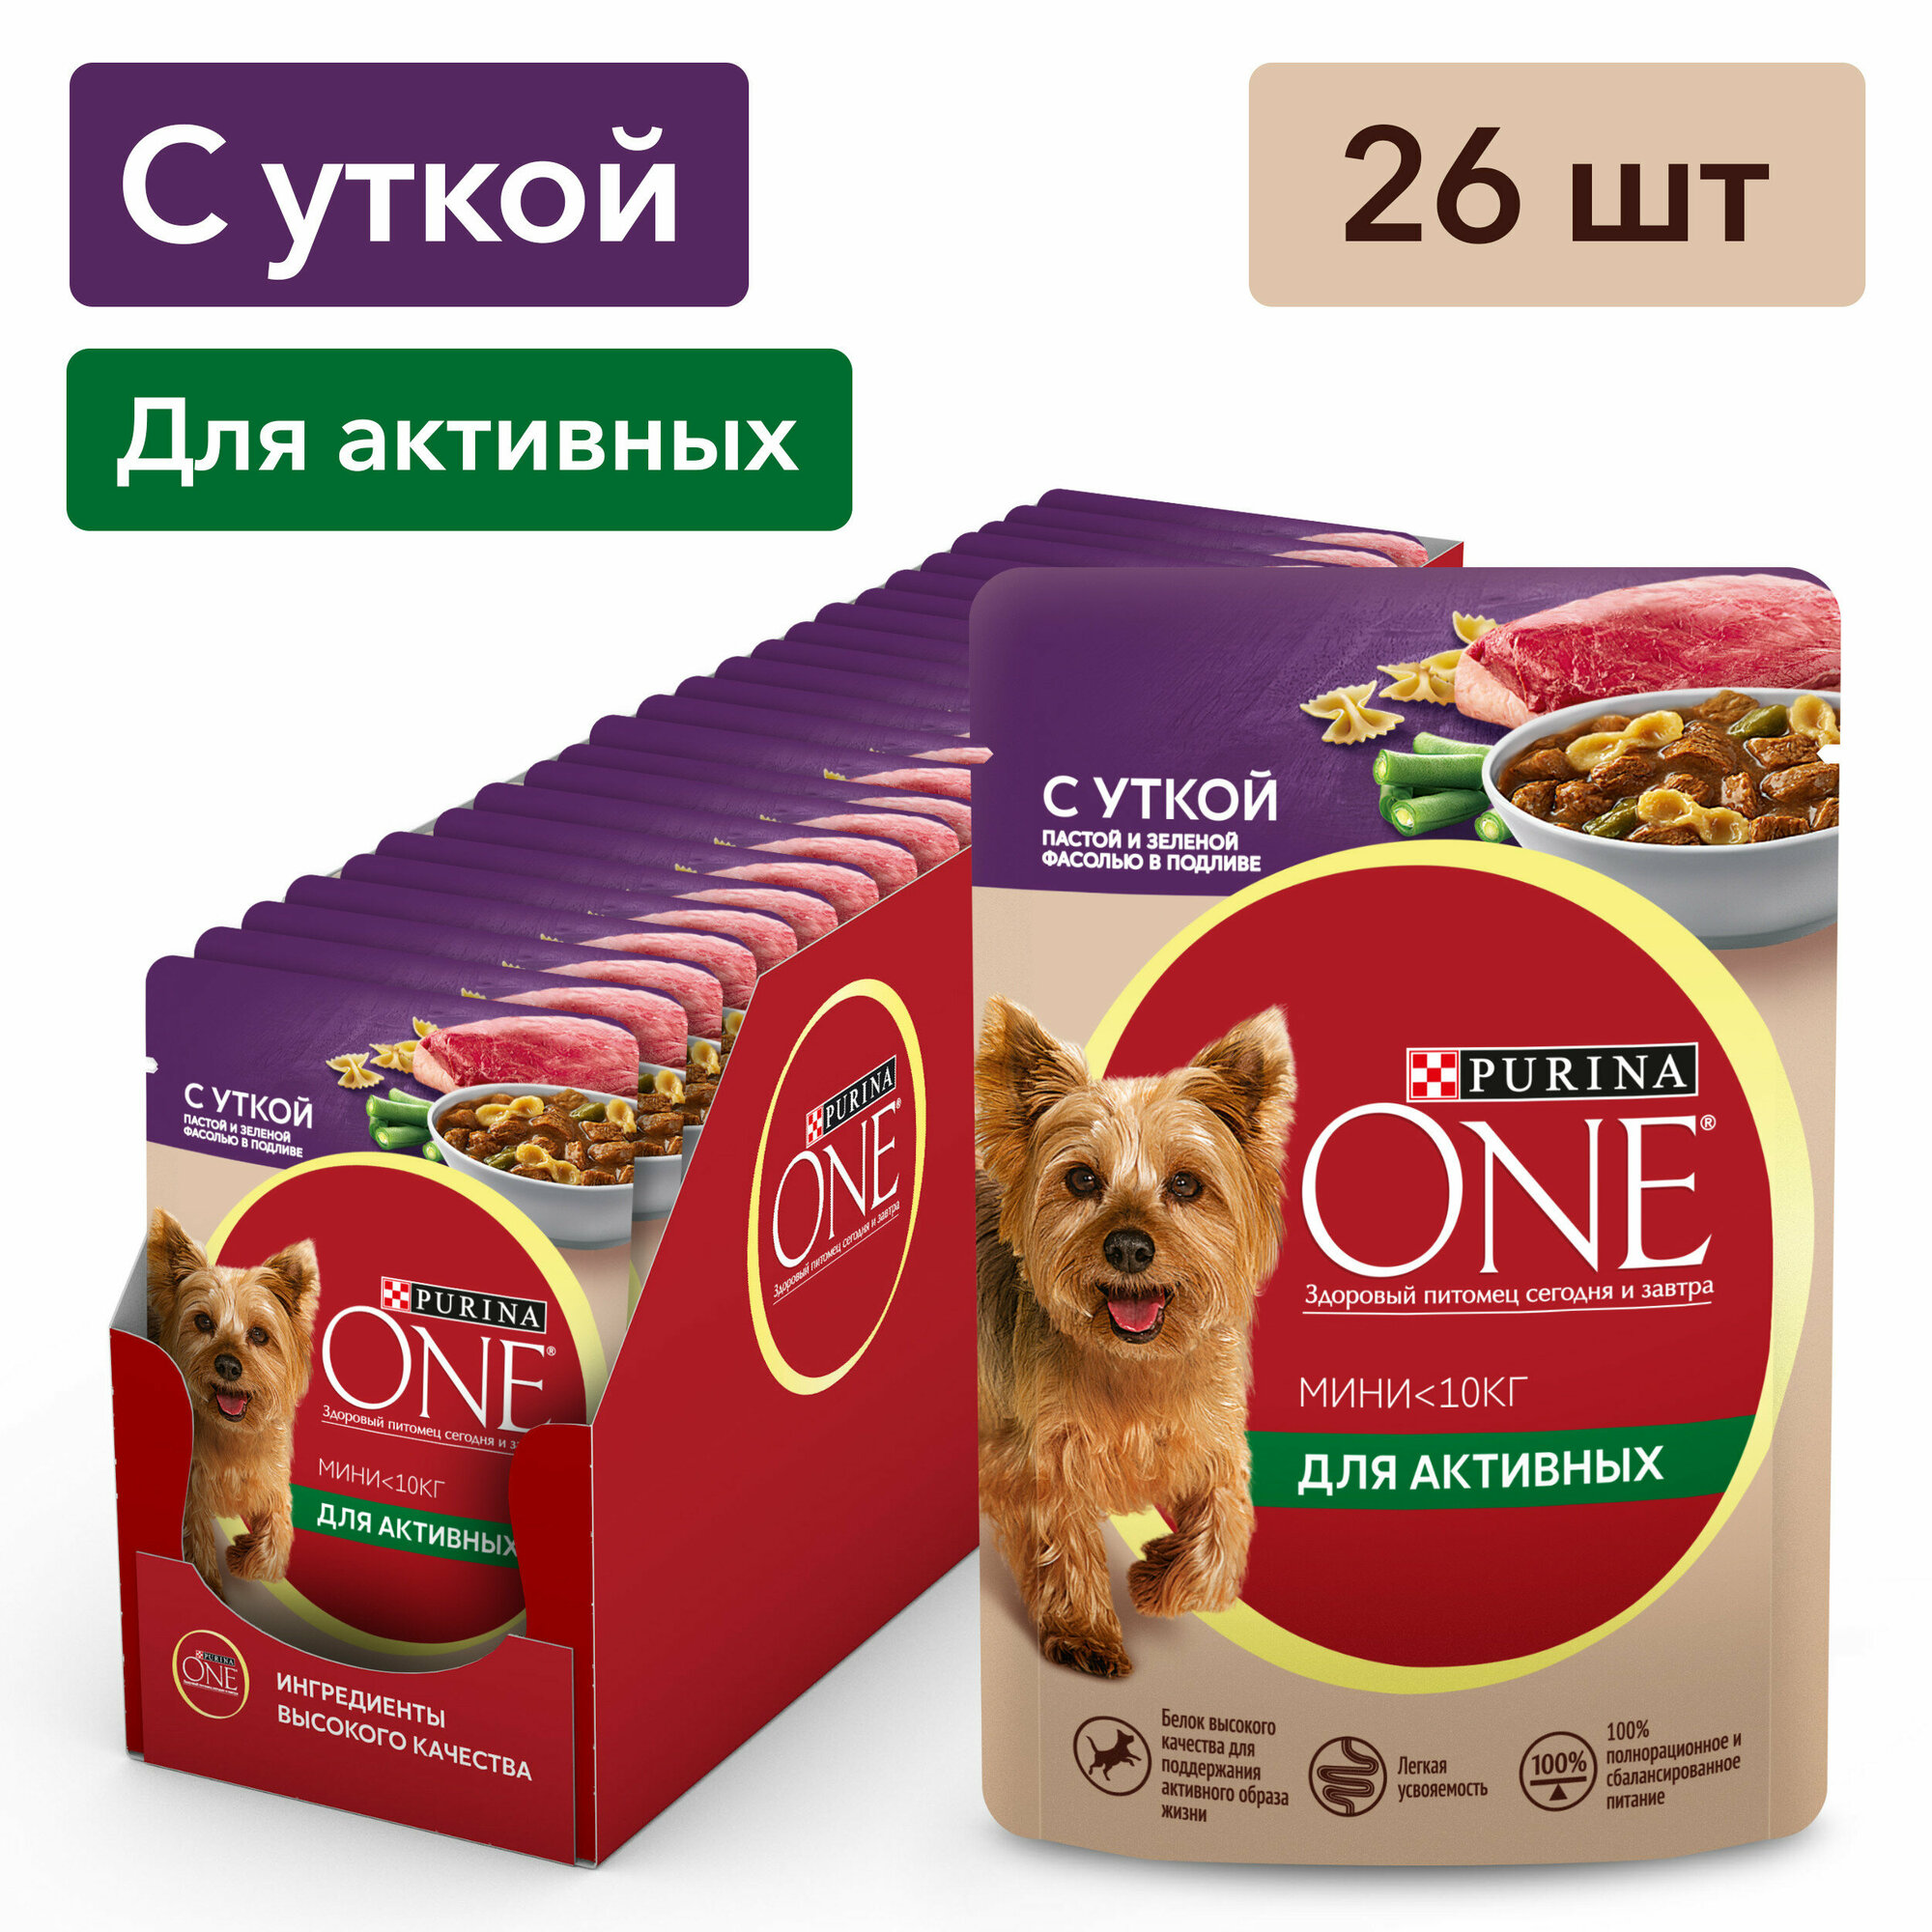 Purina One Мини пауч для активных взрослых собак мелких и карликовых пород (кусочки в подливе) Утка, 85 г. упаковка 26 шт